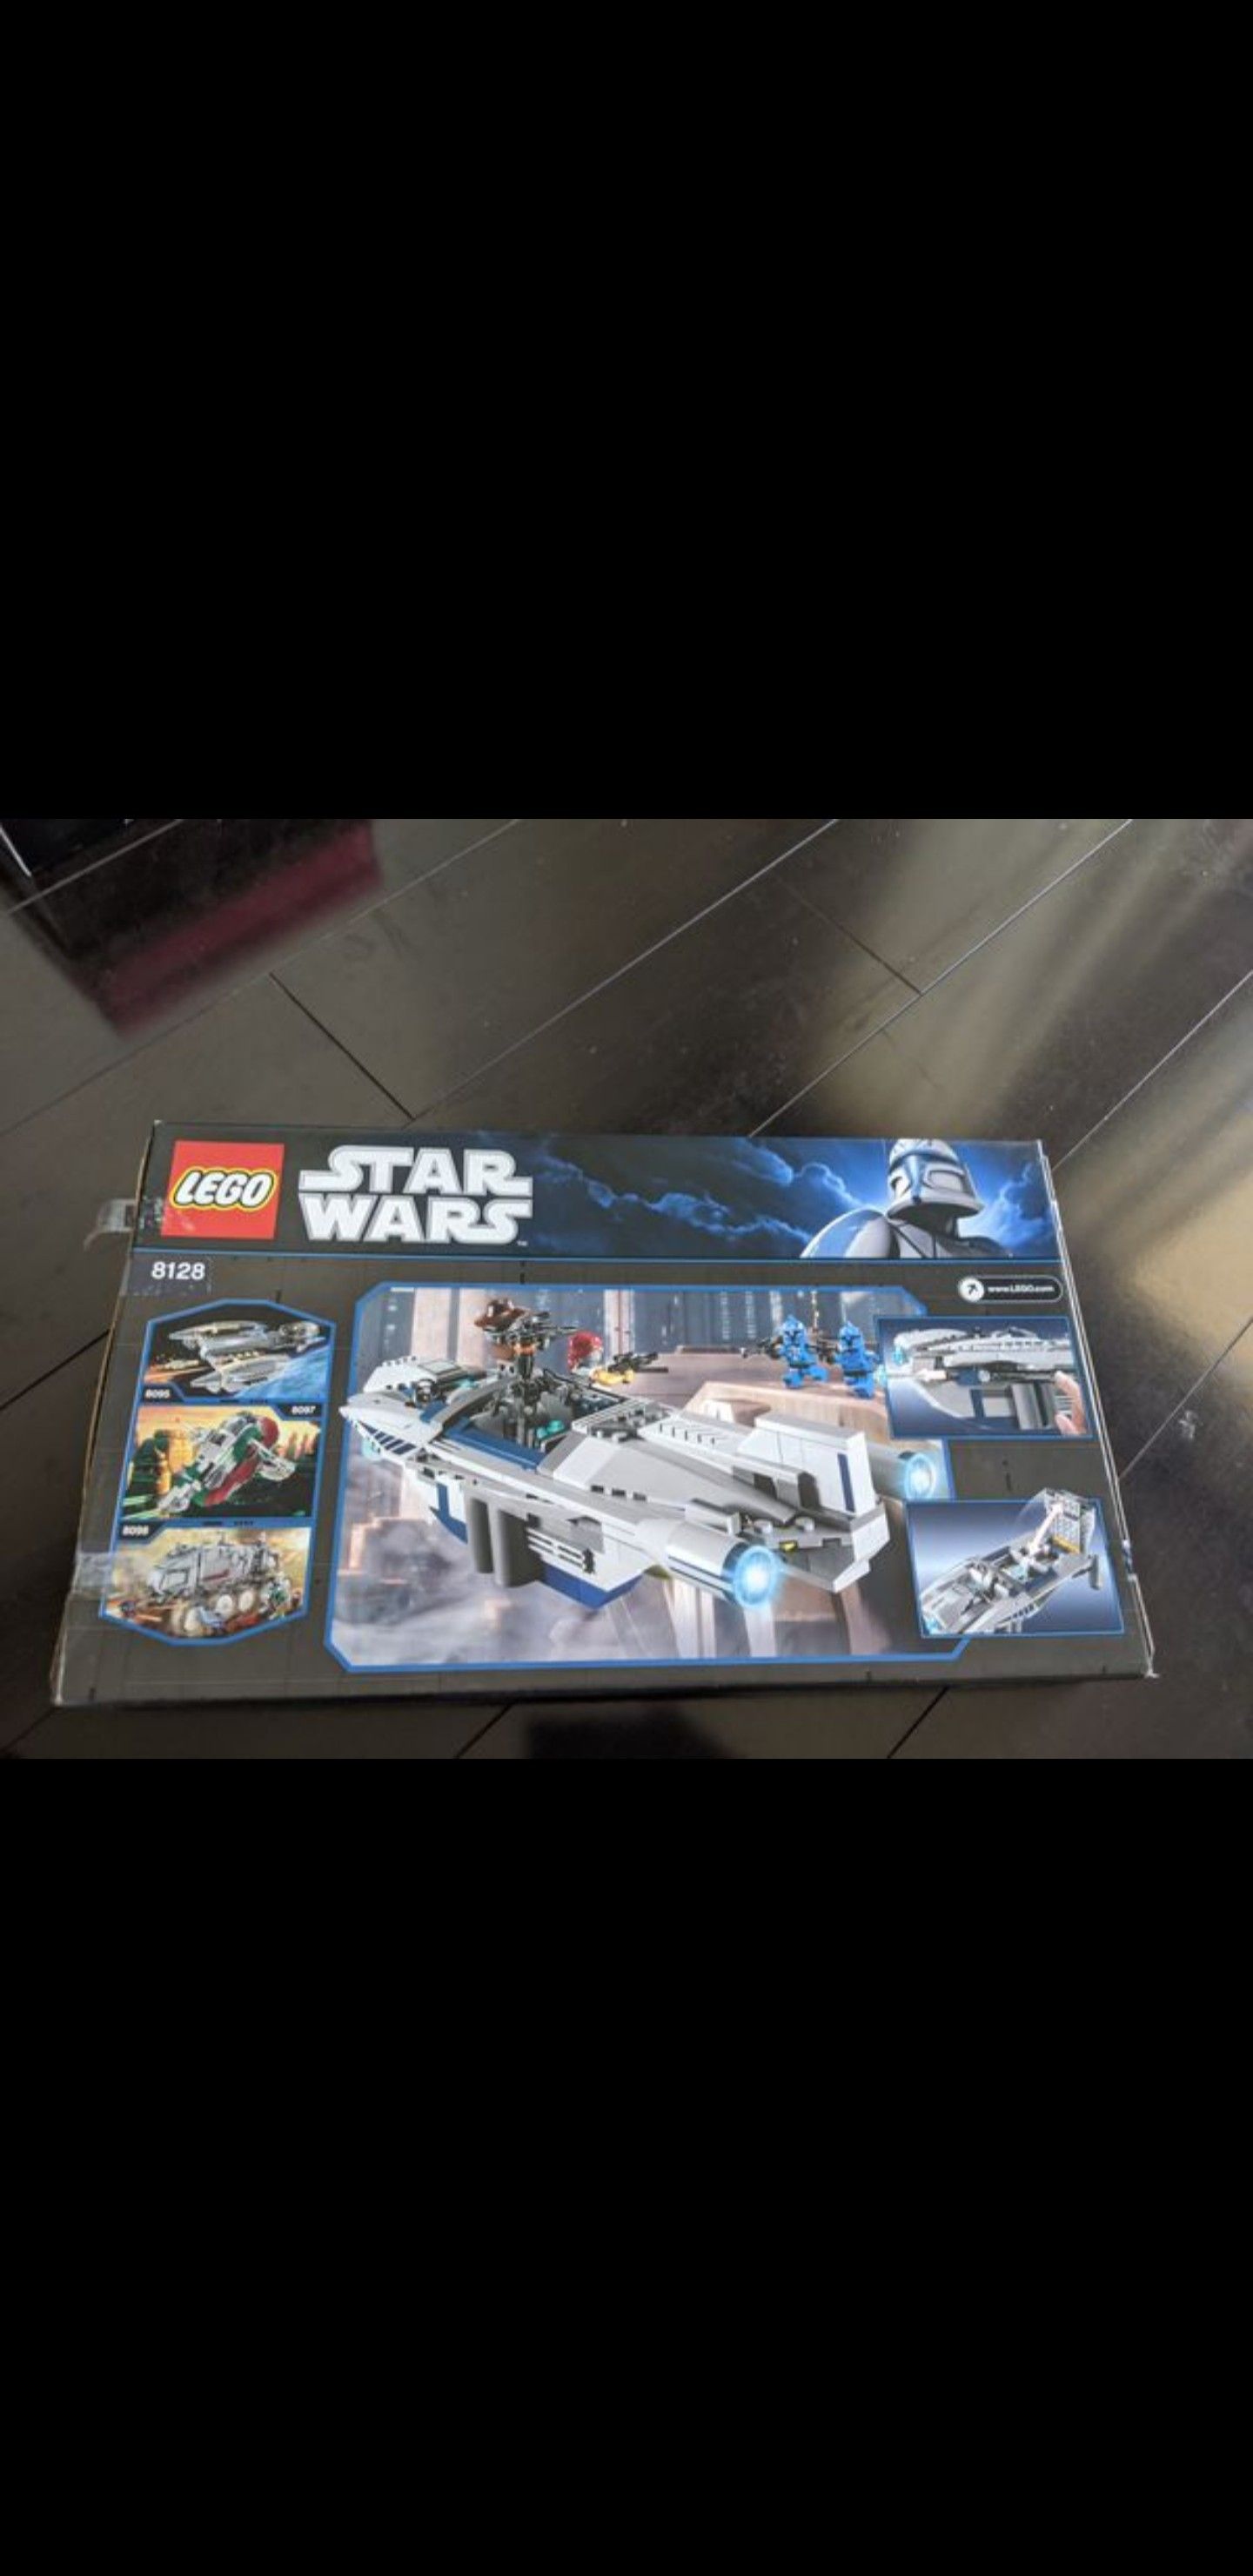 BLACK FRIDAY DEAL! LEGO STAR WARS CAD BANE'S SPEEDER SET 8128